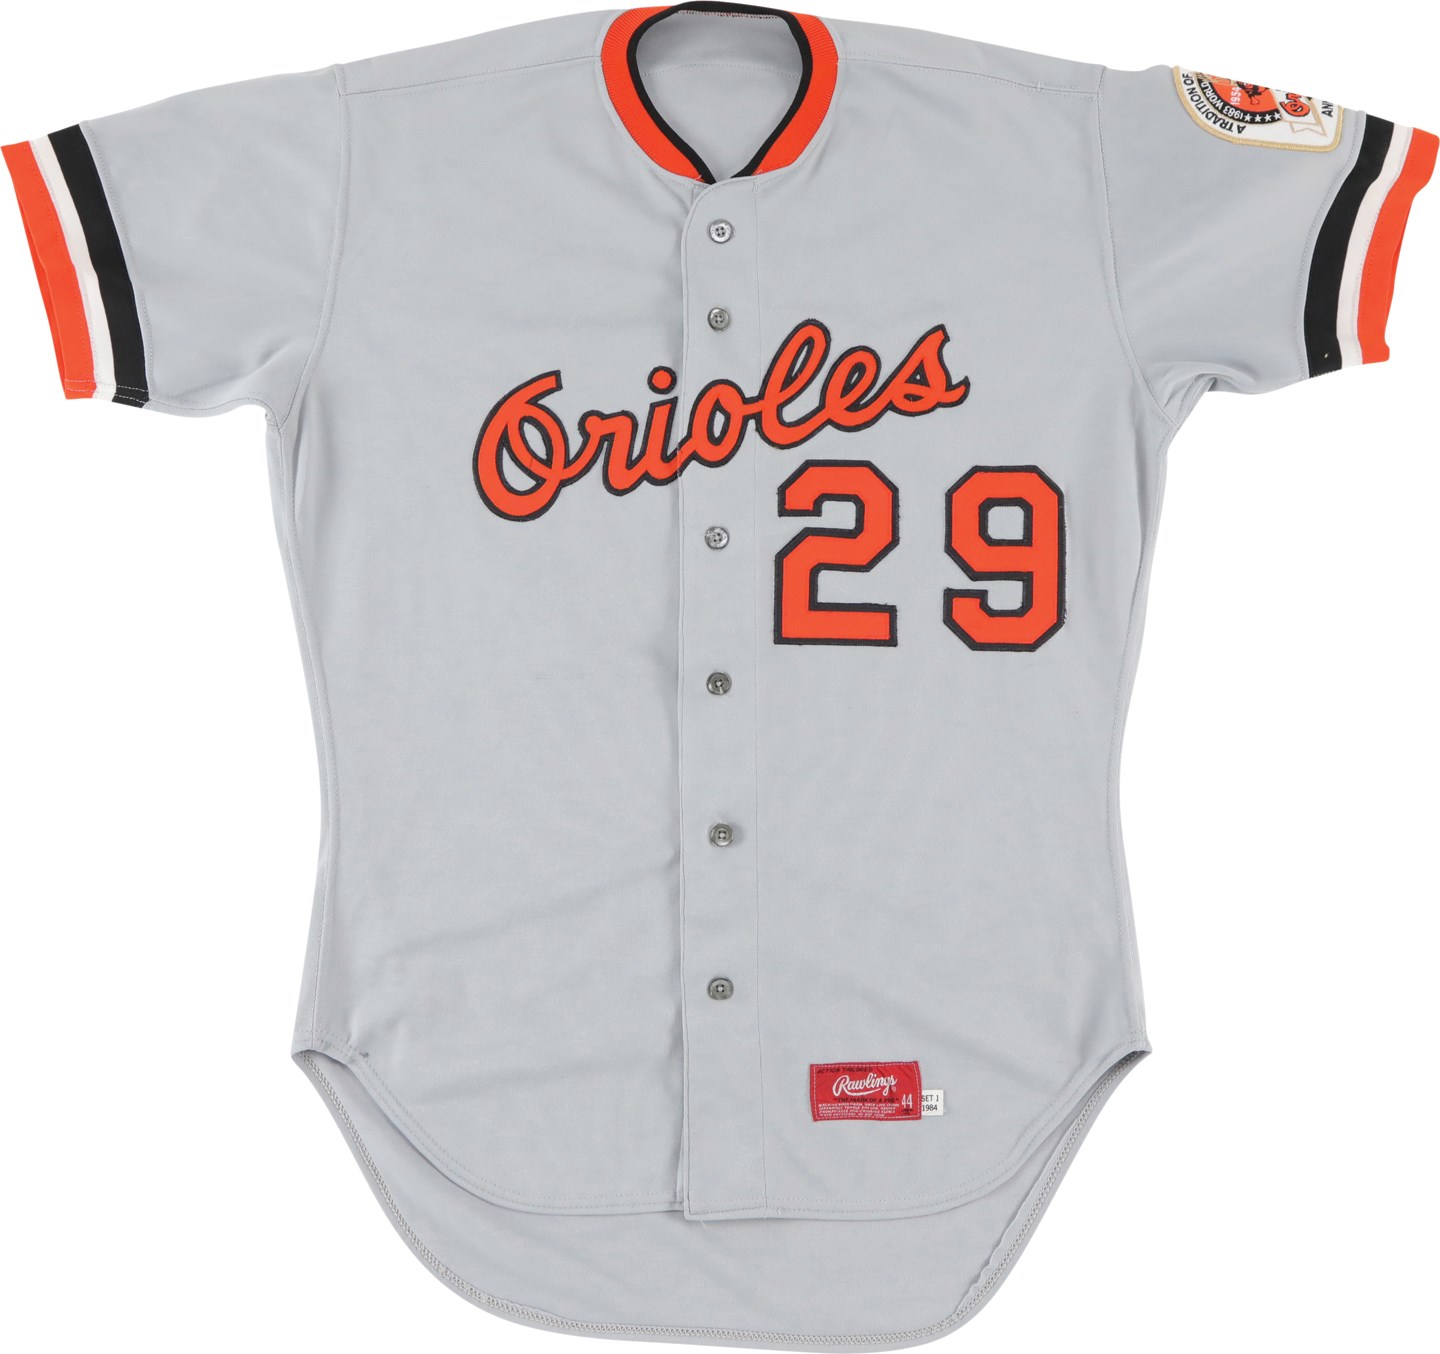 Baseball Equipment - 1984 Ken Singleton Baltimore Orioles Signed Game Worn Jersey